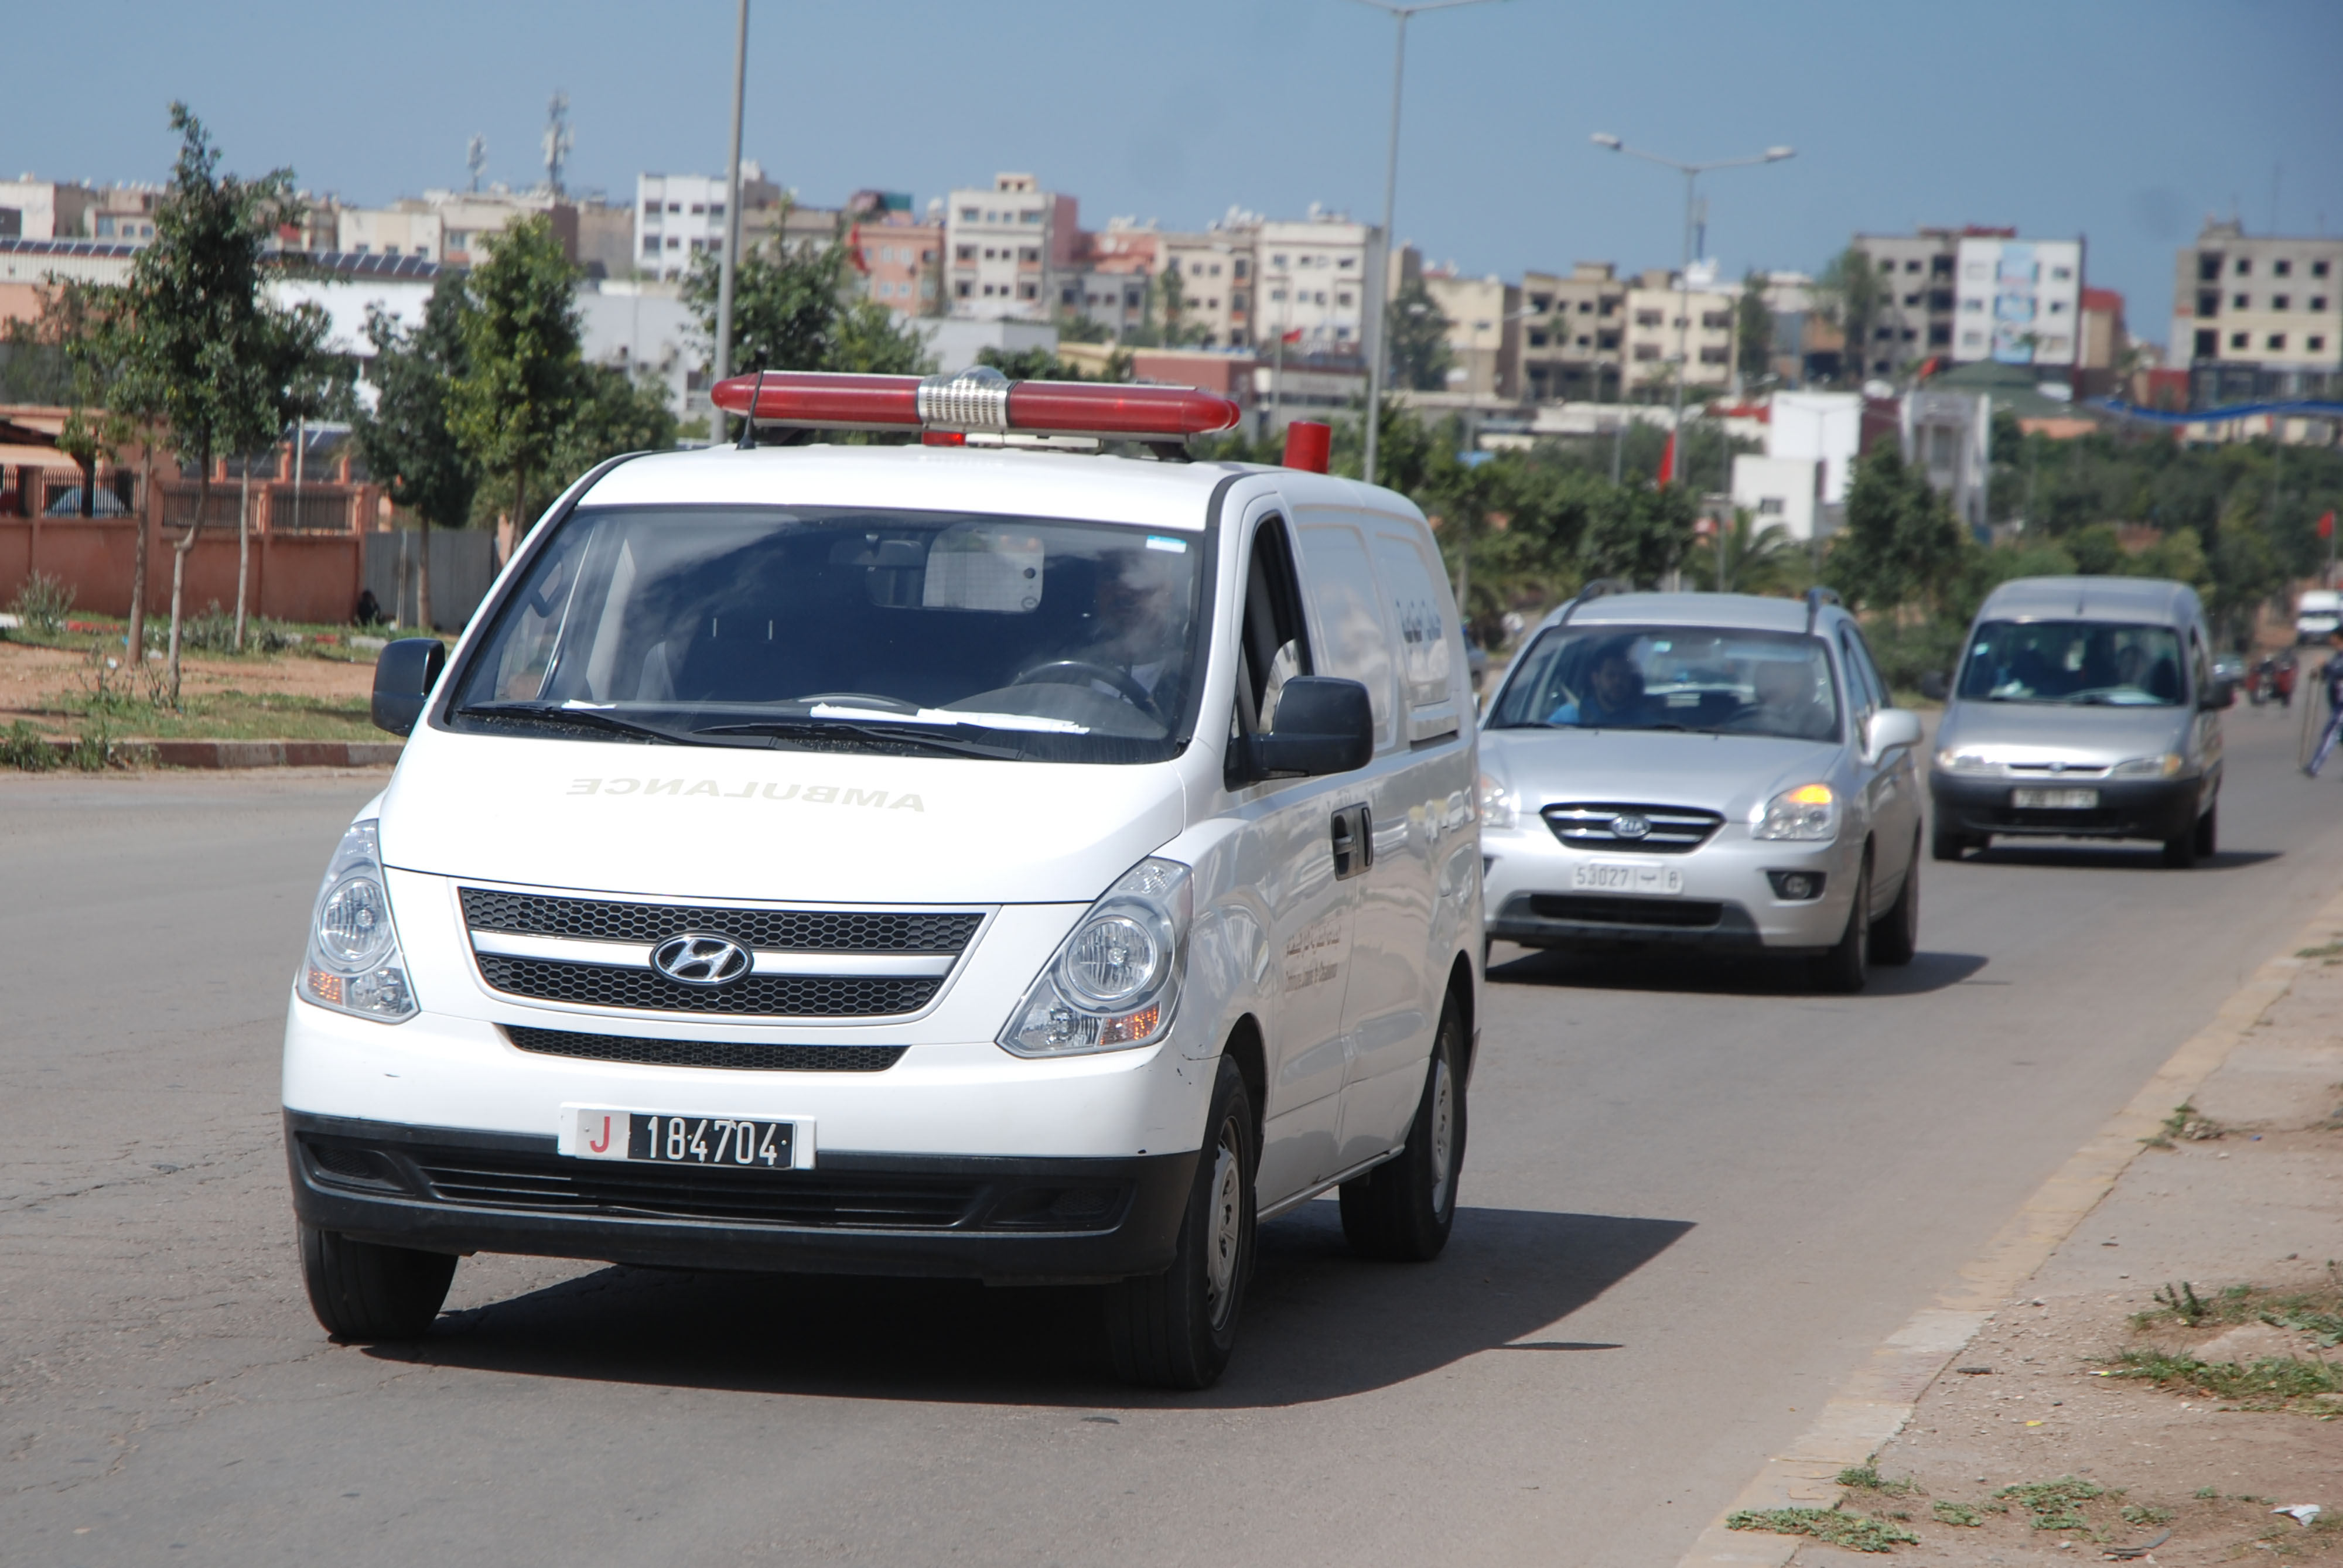 Les convois funéraires ne peuvent plus dépasser deux voitures et une ambulance (photo Kamal)